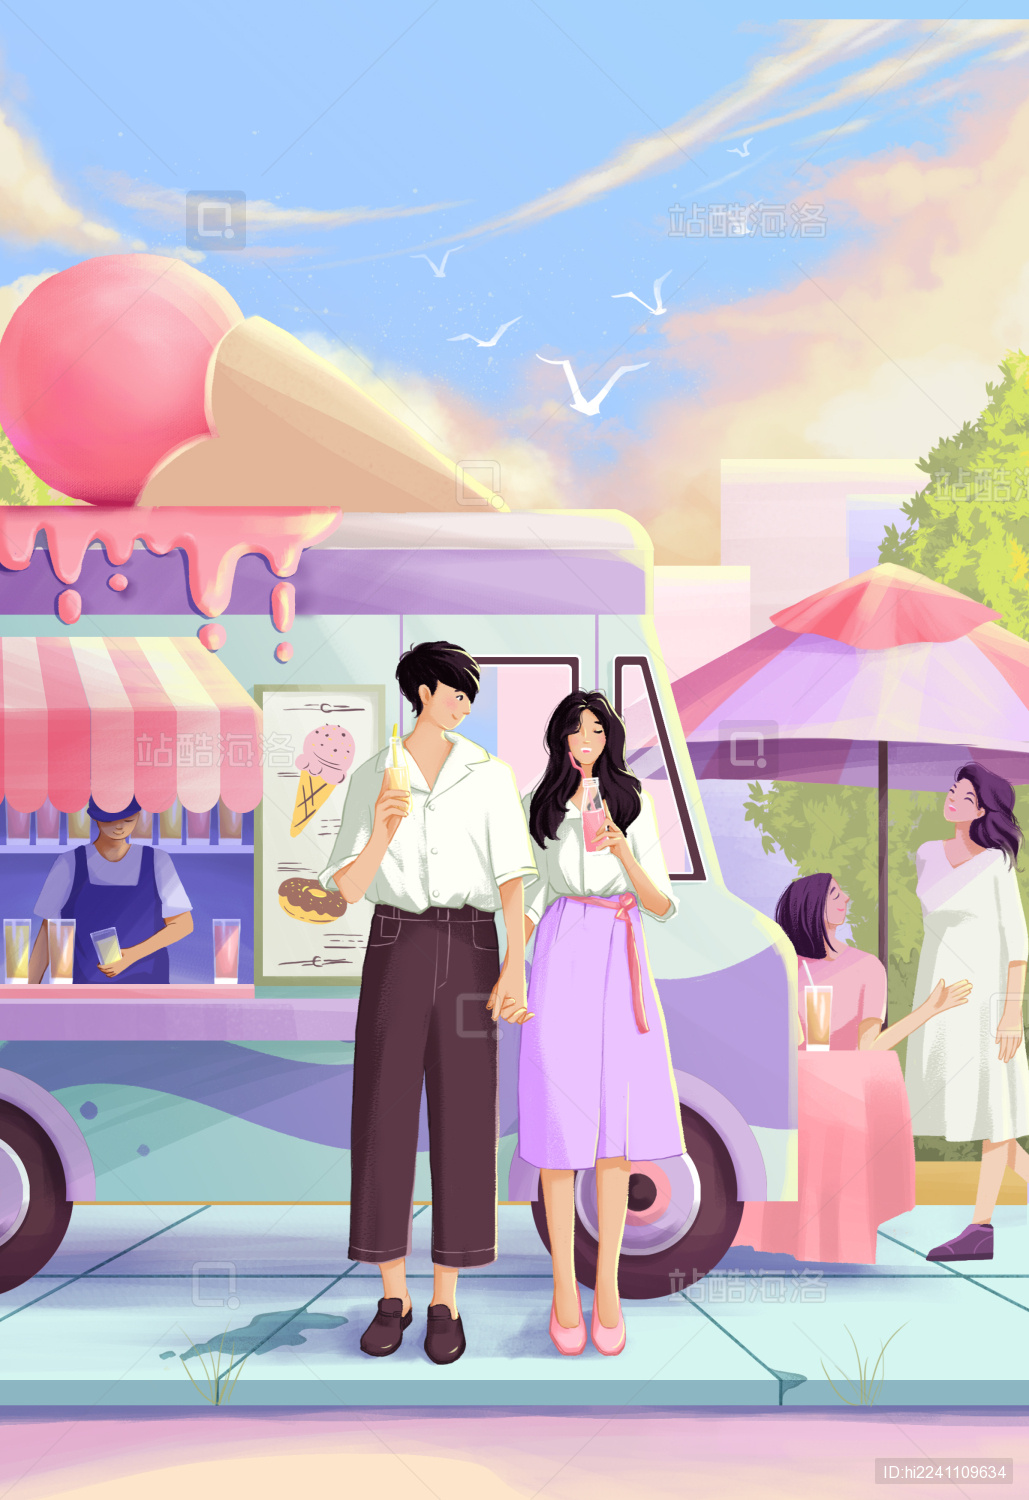 快乐的年轻情侣吃冰激凌-蓝牛仔影像-中国原创广告影像素材